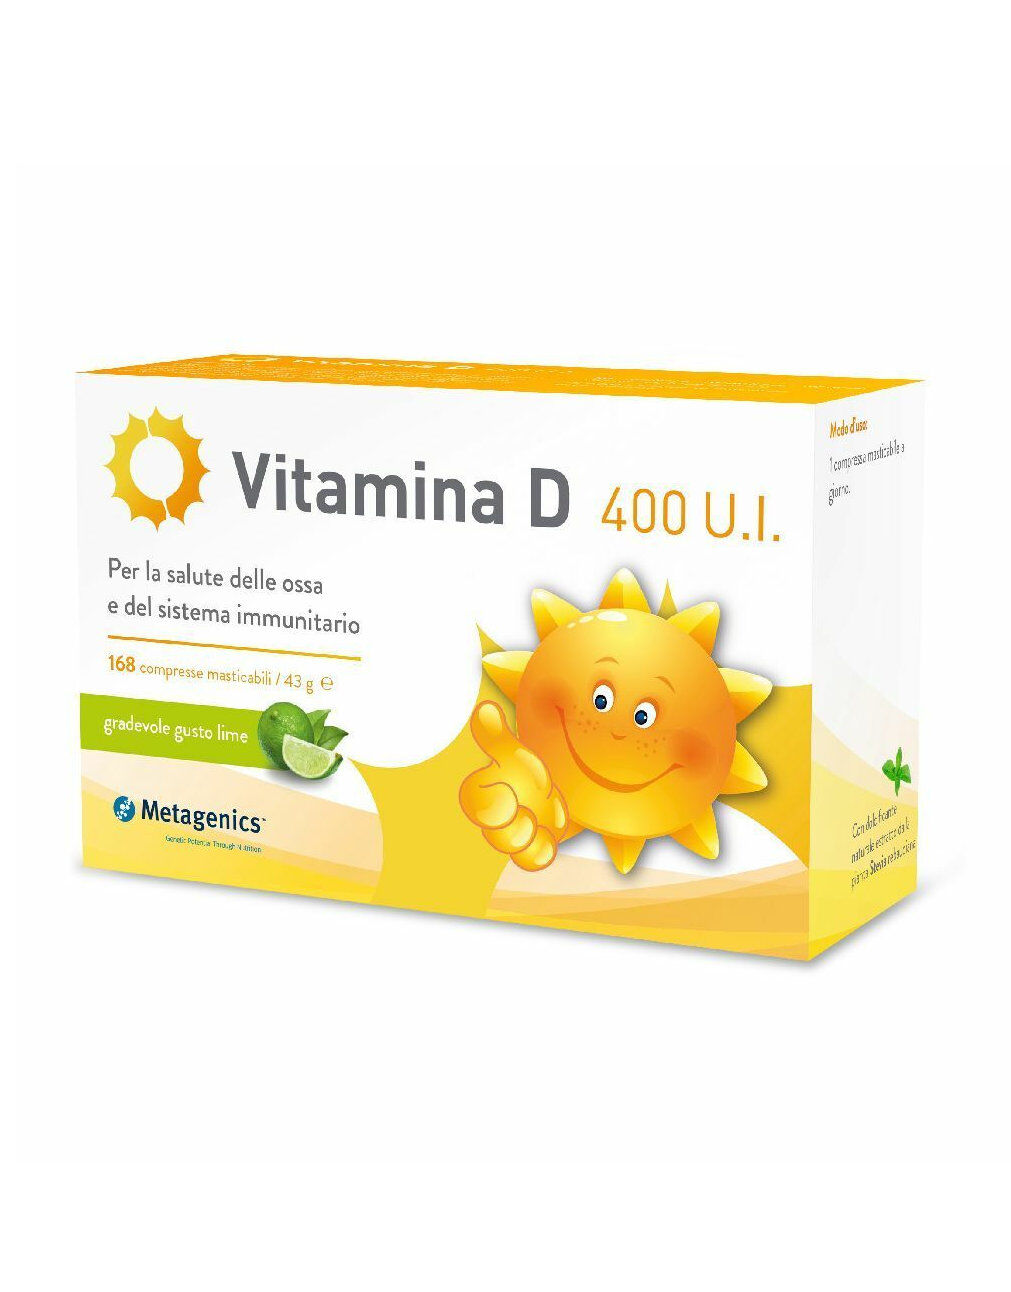 METAGENICS Vitamina D Kids 400 U.I. 168 Compresse Masticabili Lime